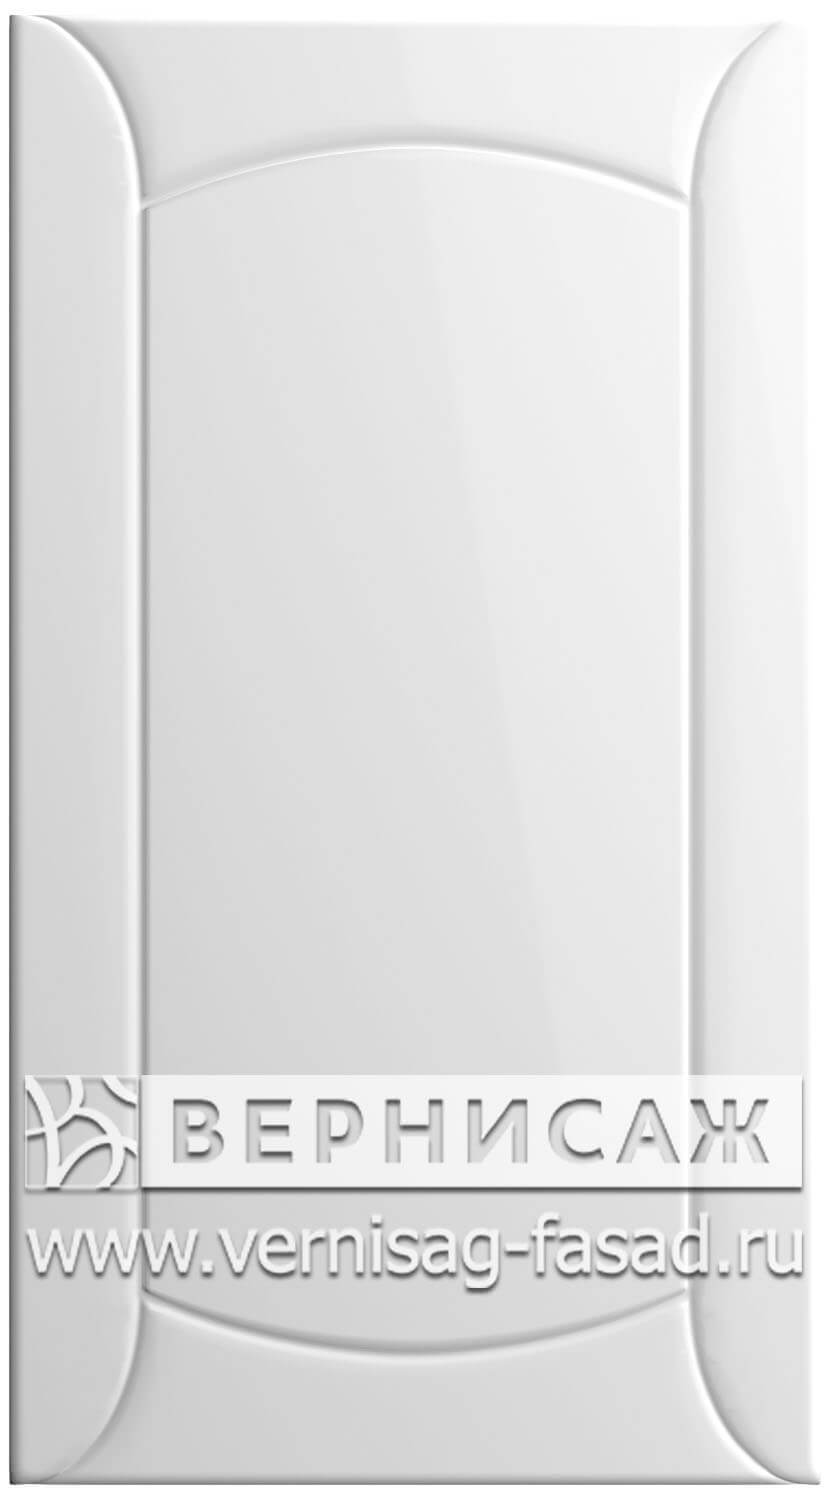  Фасады в пленке ПВХ, Фрезеровка № 20, цвет Белый глянец